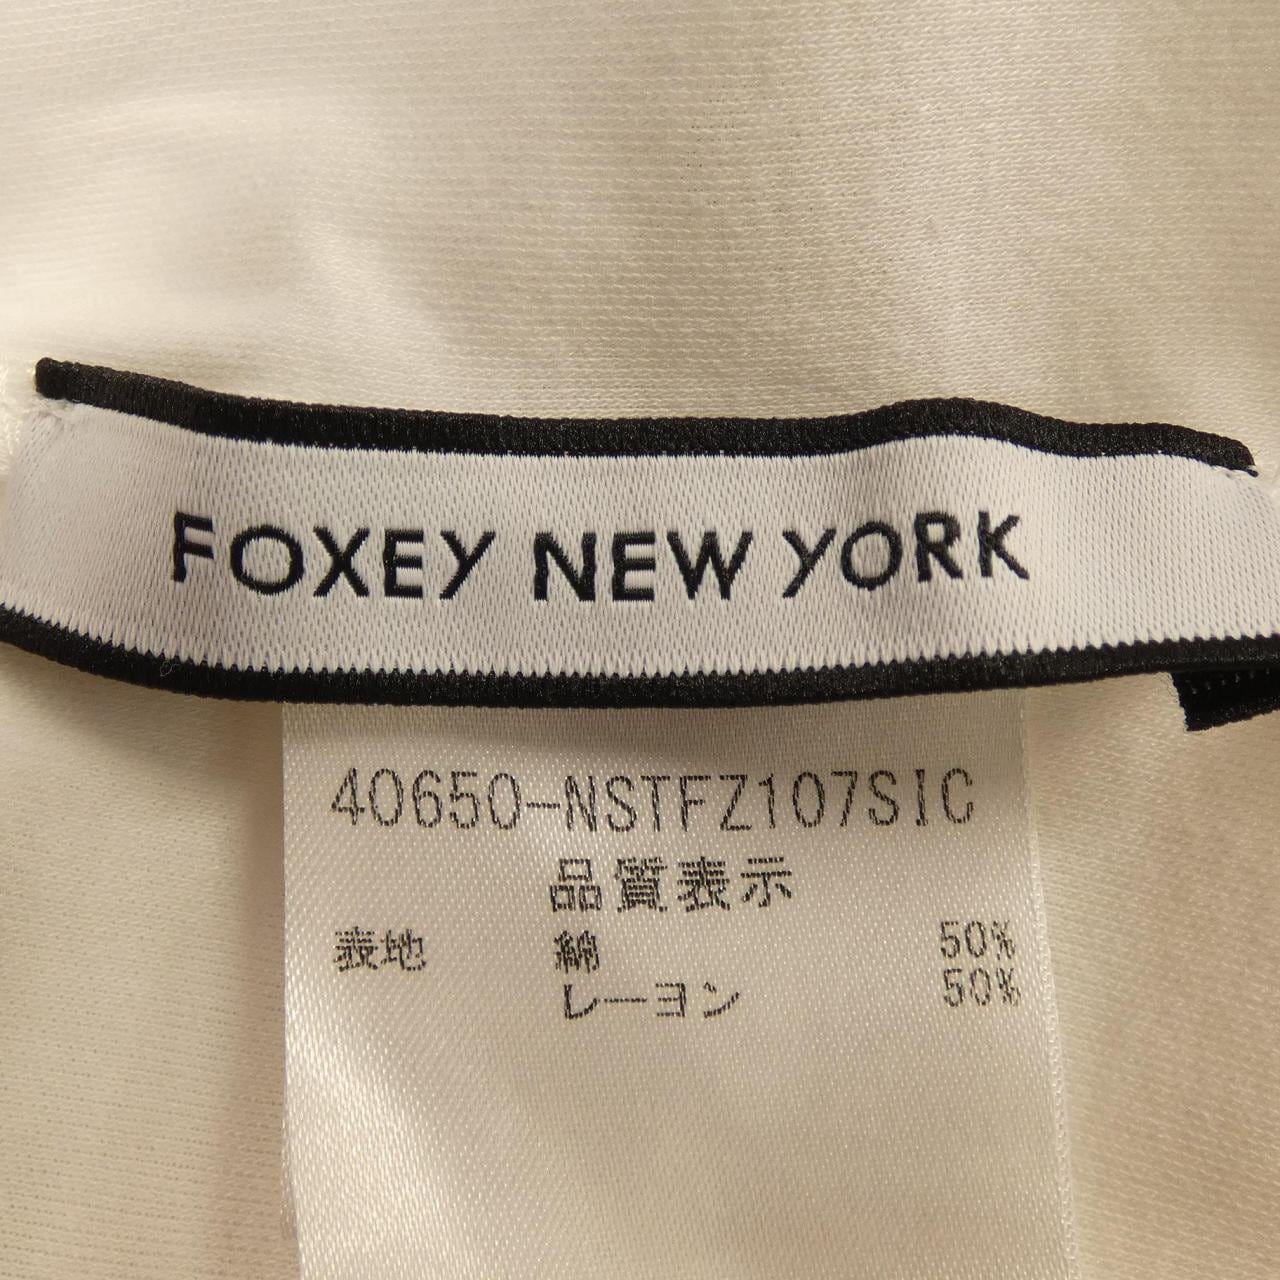 福西纽约FOXEY NEW YORK T恤